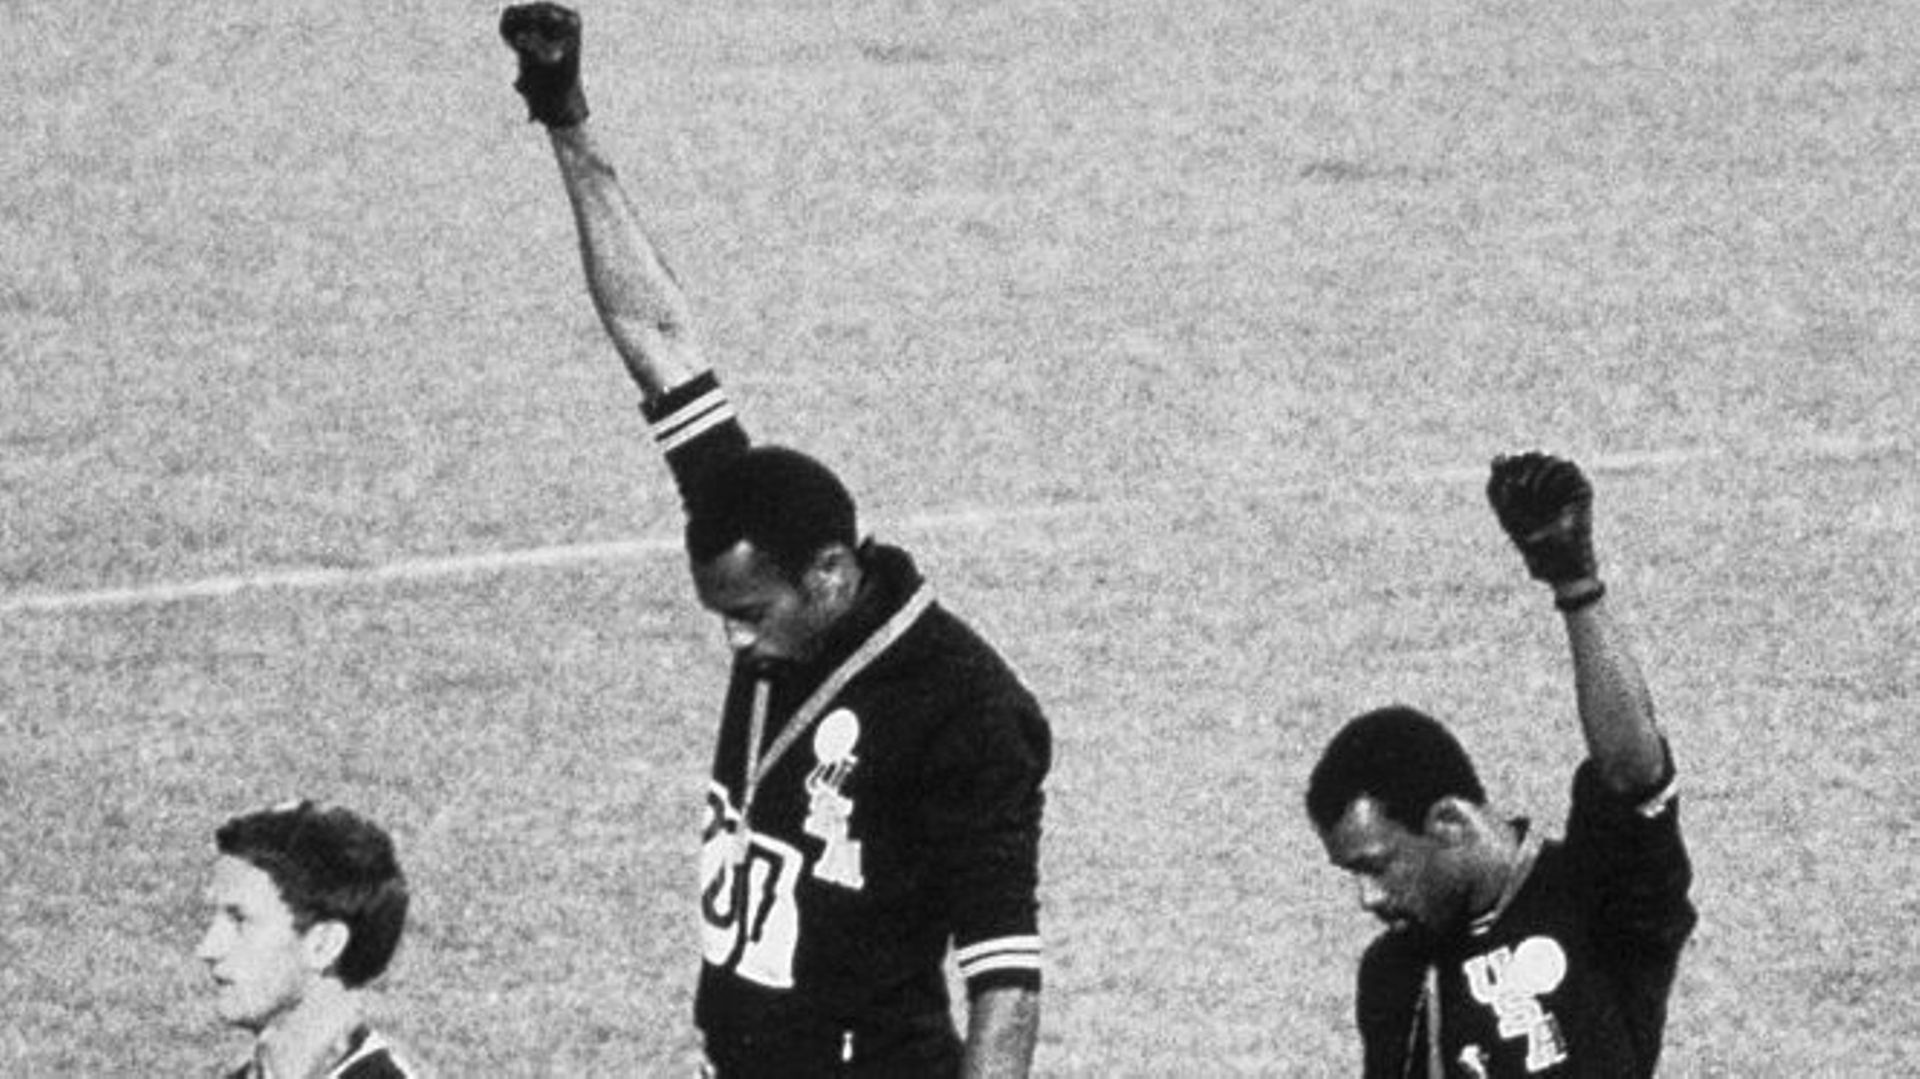 Tommie Smith et John Carlos se partagent une paire de gants pour lever leur poing en guise de protestation face à la ségrégation raciale aux États-Unis.